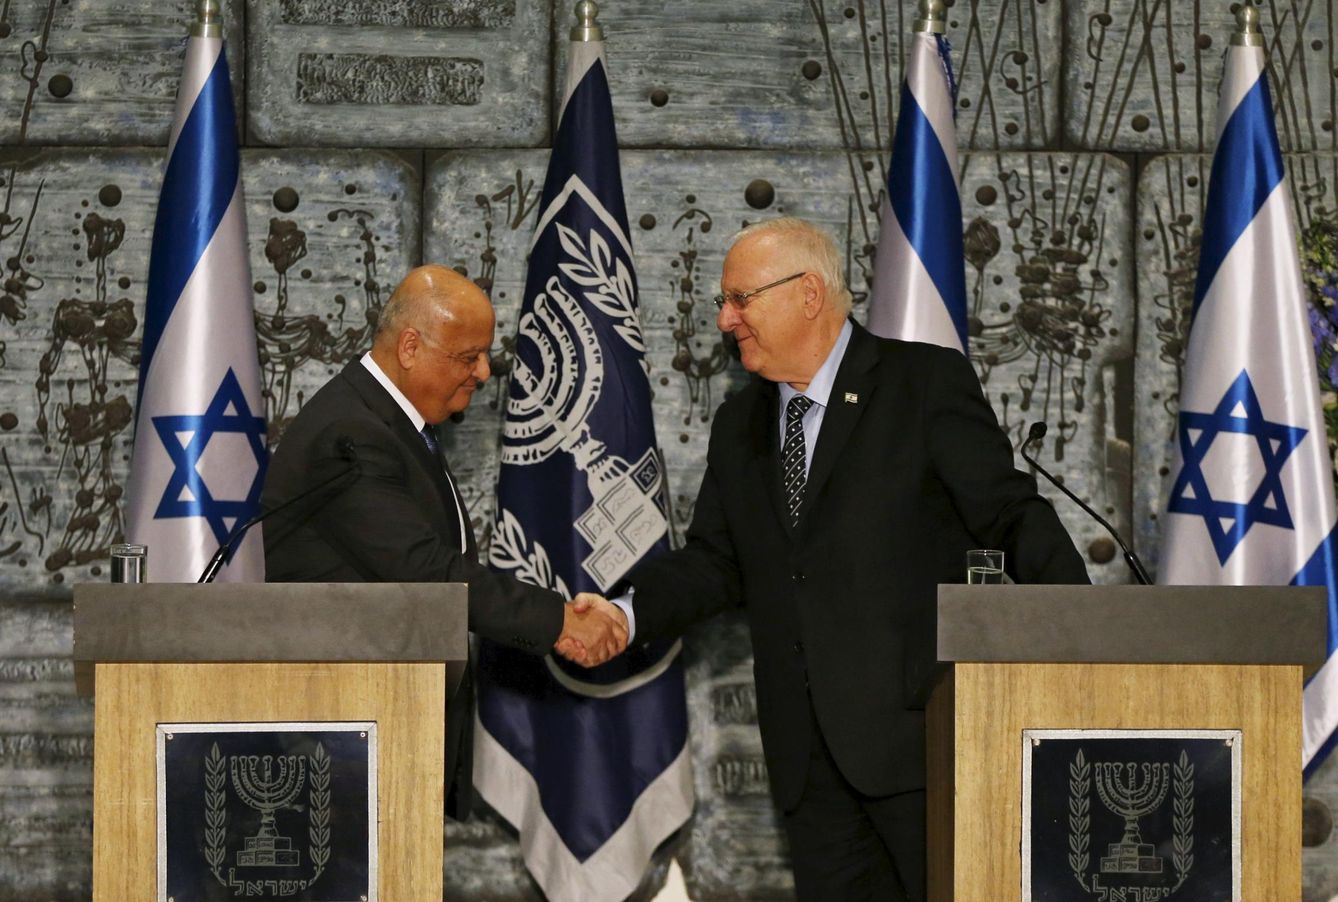 El juez Salim Joubran estrecha la mano del Presidente israelí Reuven Rivlin durante una ceremonia electoral en Jerusalén, el 25 de marzo de 2015 (Reuters)